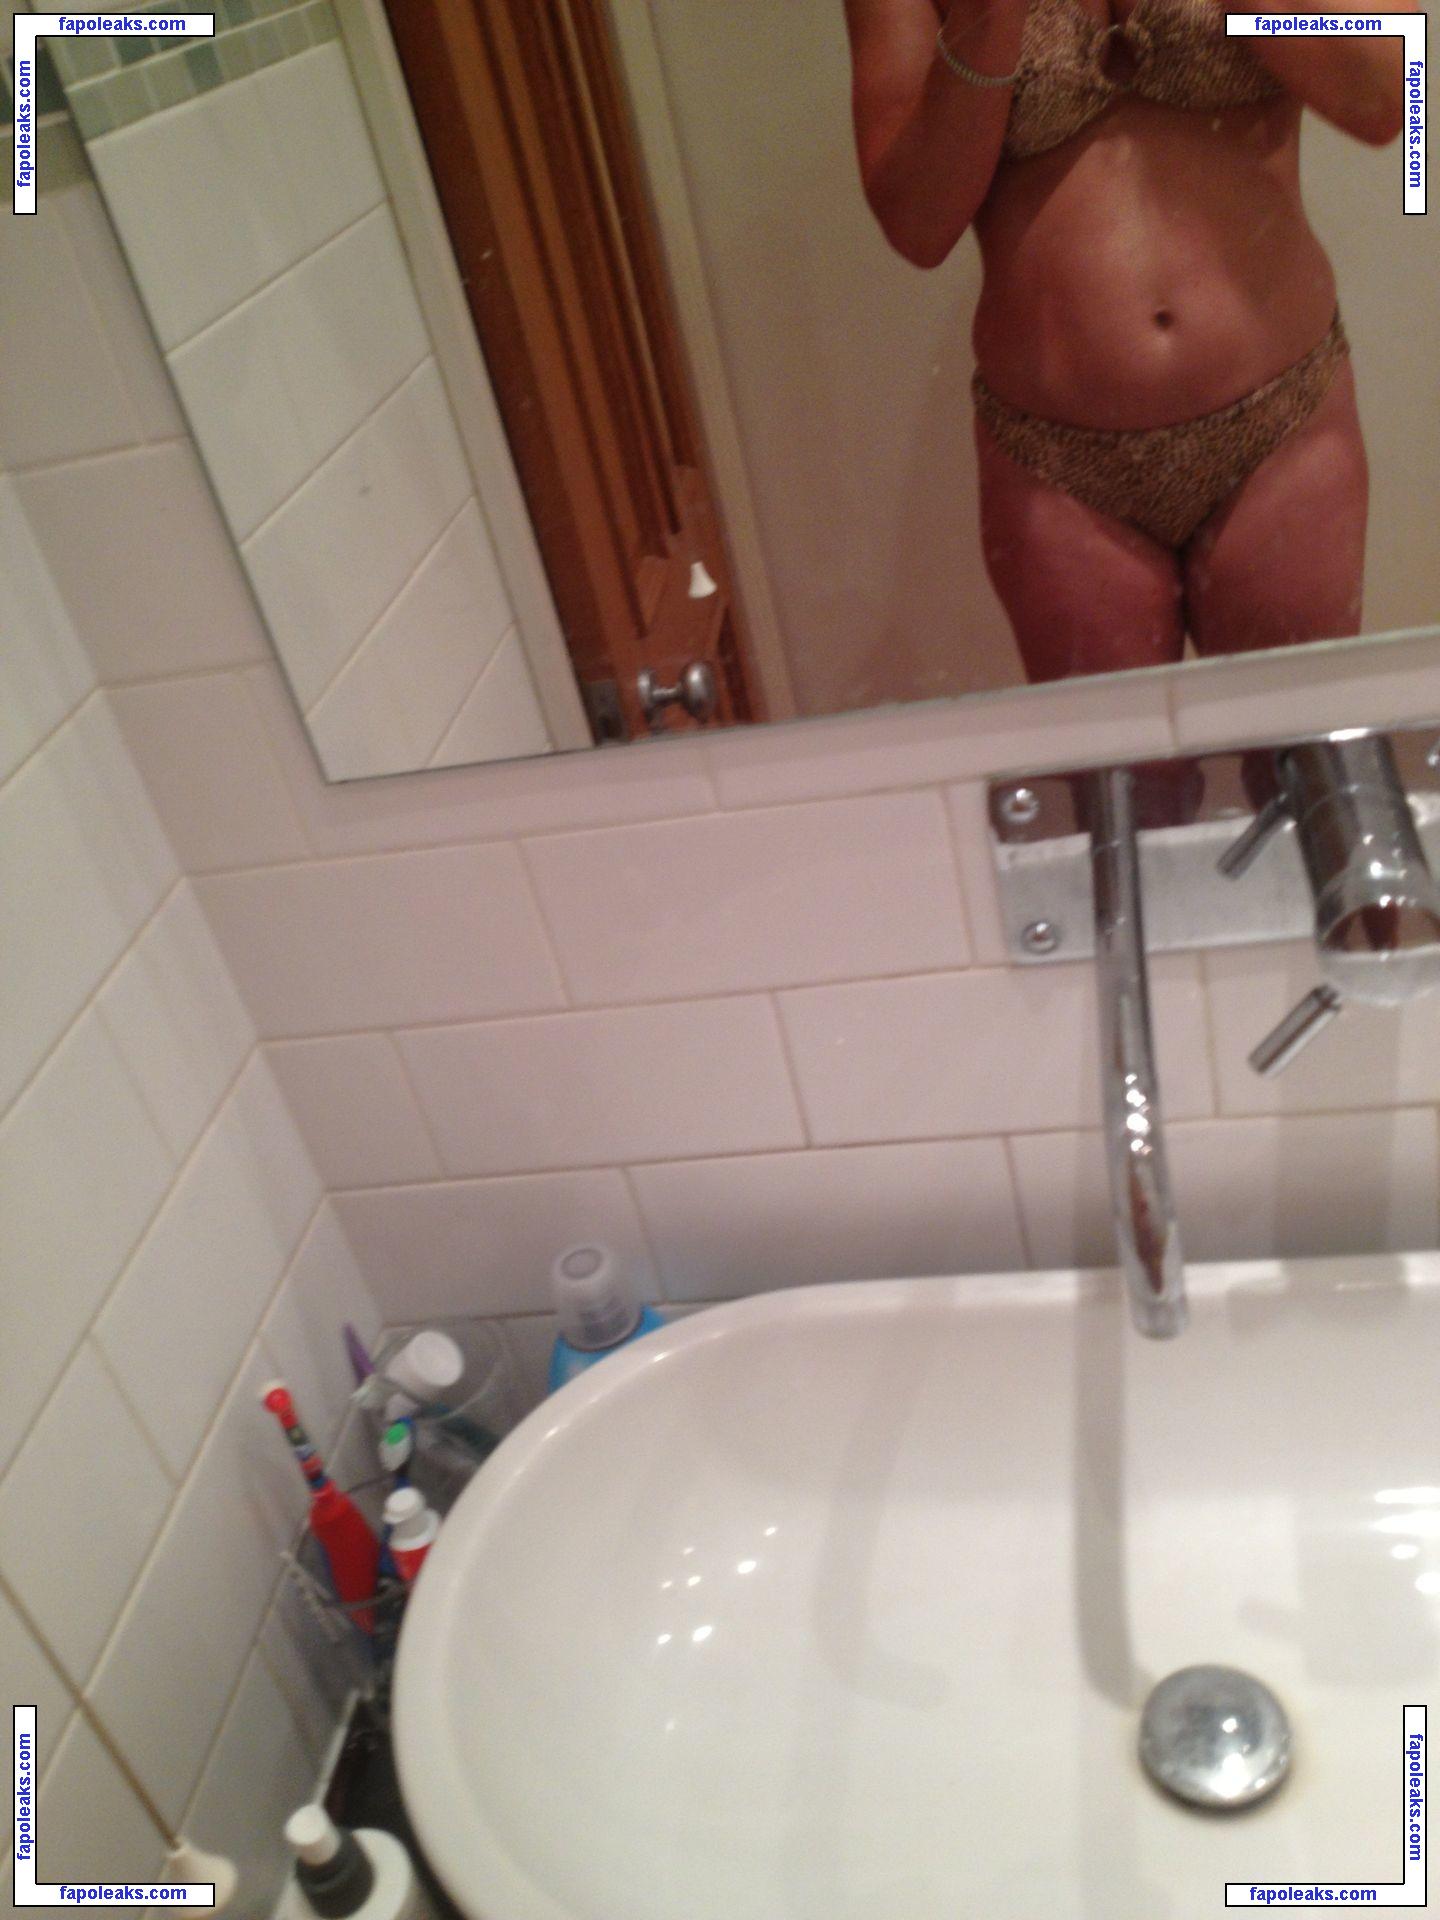 Jill Halfpenny / jillhalfpennyfans nude photo #0006 from OnlyFans